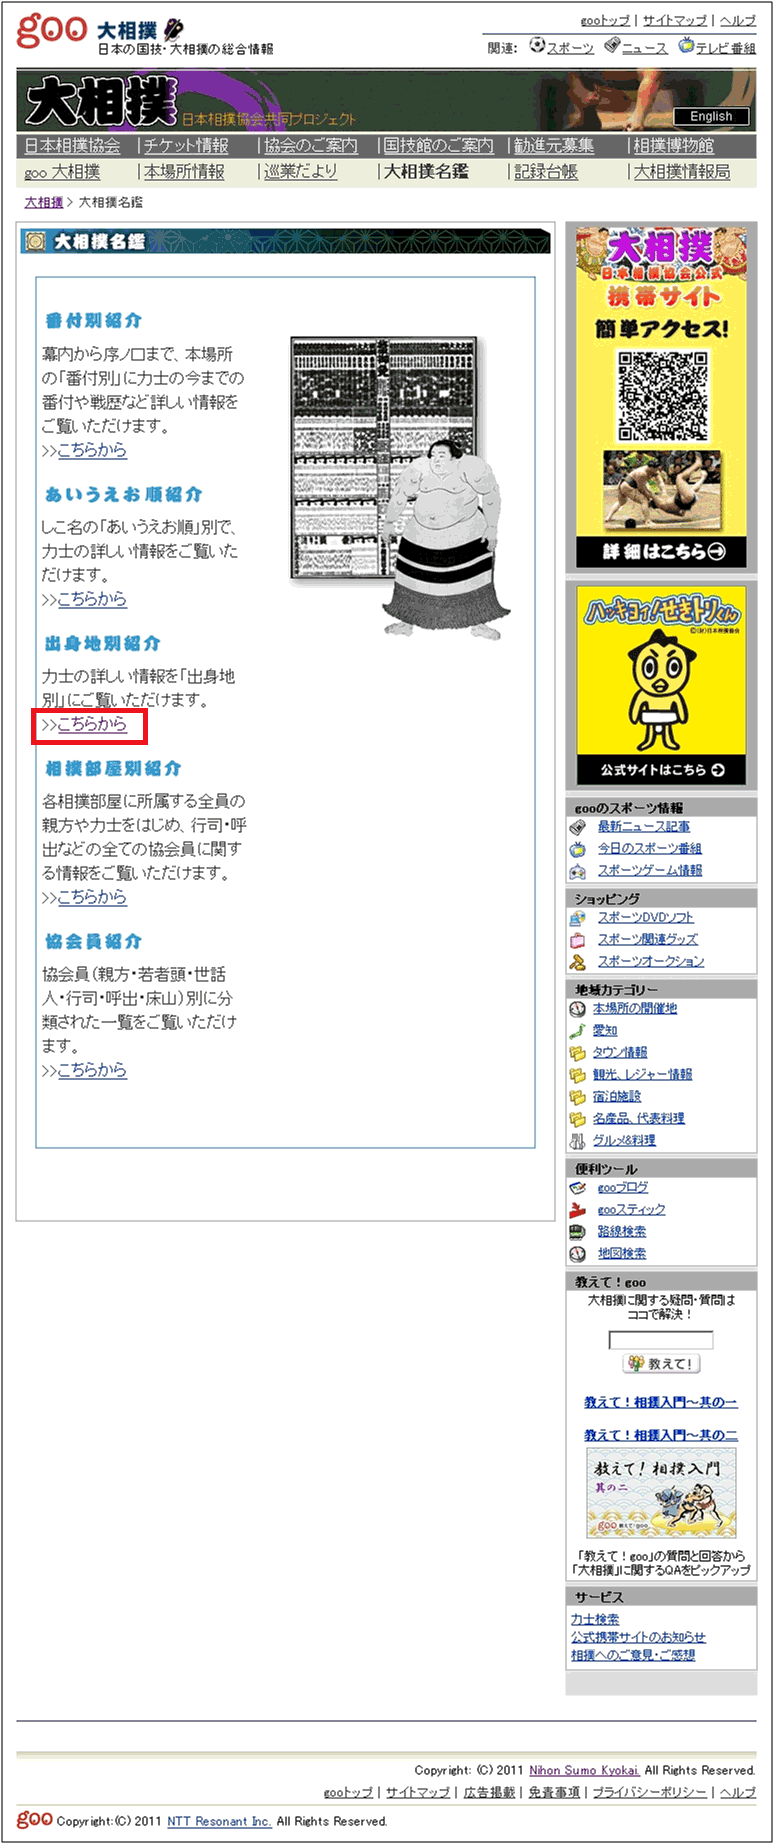 日本相撲協会 をエキスパートチェック 有名サイト かってに解析 Web担当者forum